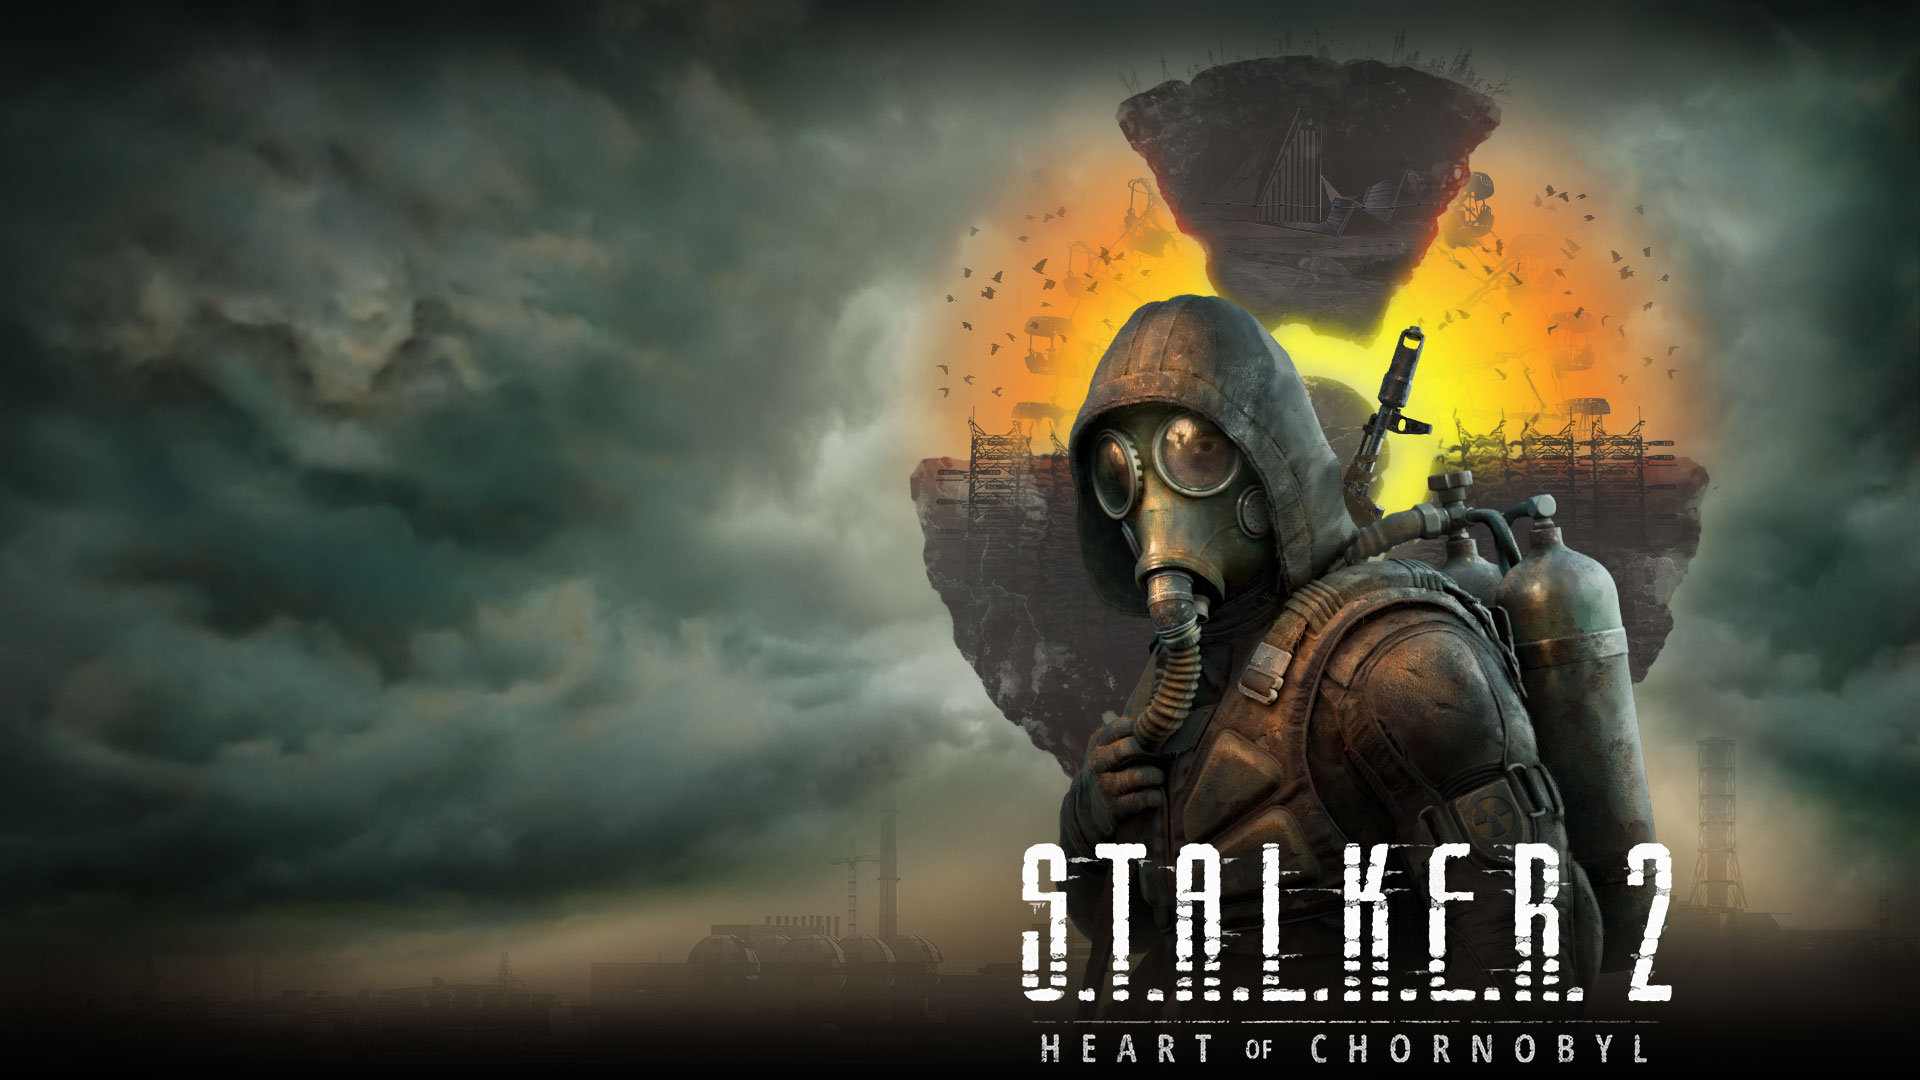 Stalker 2 Heart of Chornobyl, eine Figur steht vor einer schwebenden Landschaft mit Wolken und Rauch in der Luft.